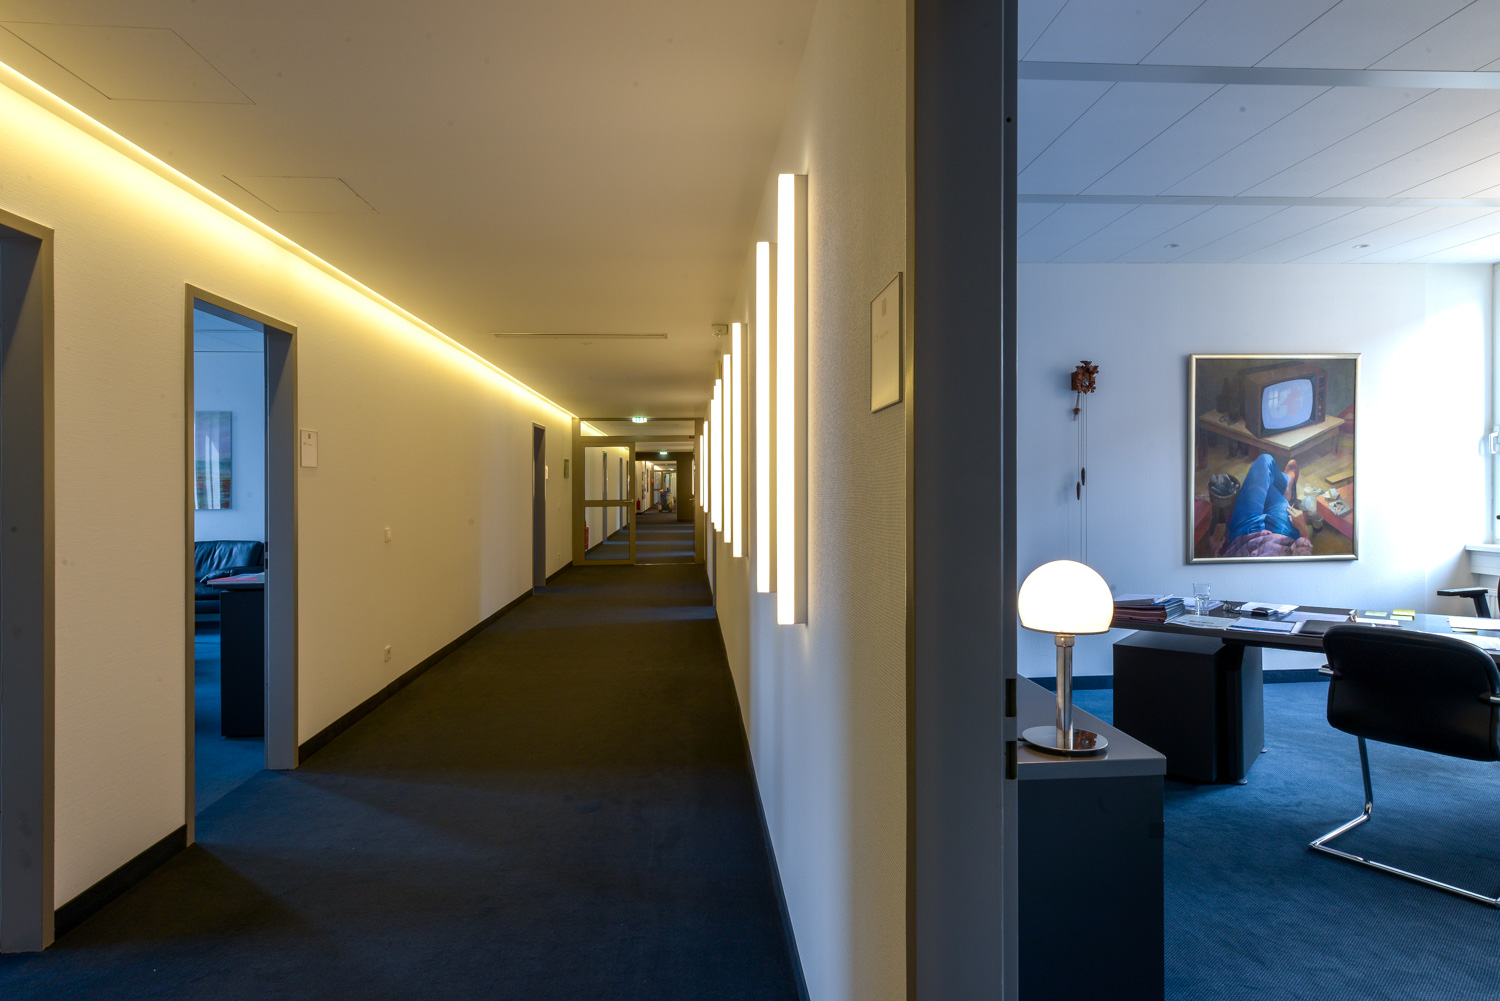 Galeriebild / Funk-Gruppe Hamburg, Neugestaltung / Renovierung eines Bürogebäudes